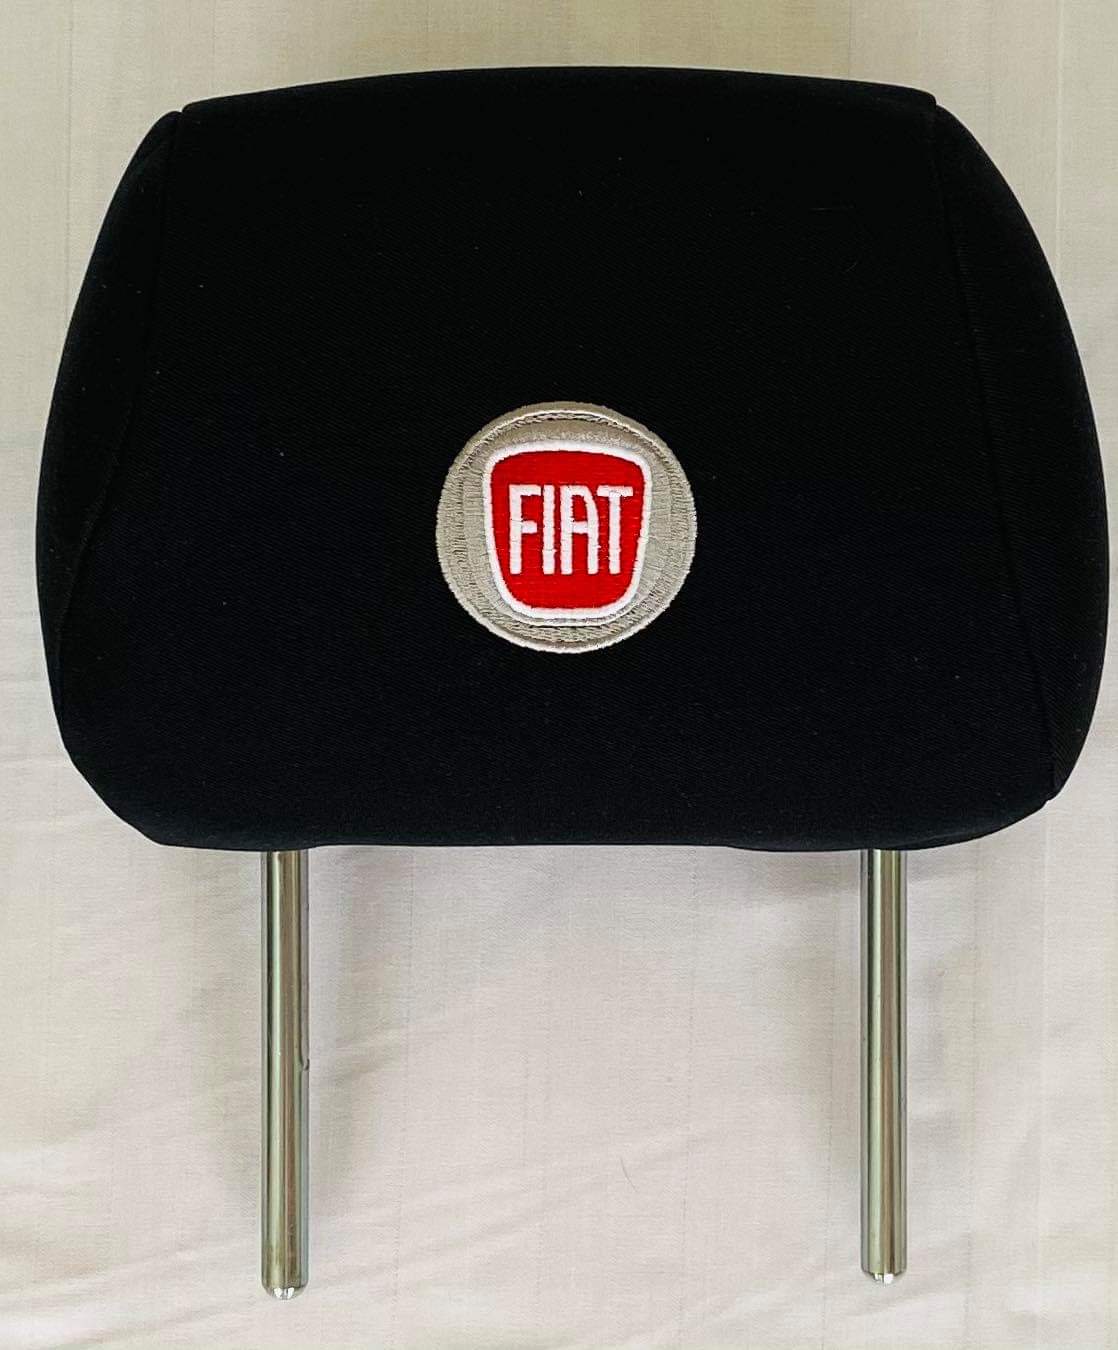 Čierne návleky na opierky hlavy s logom Fiat - 2ks